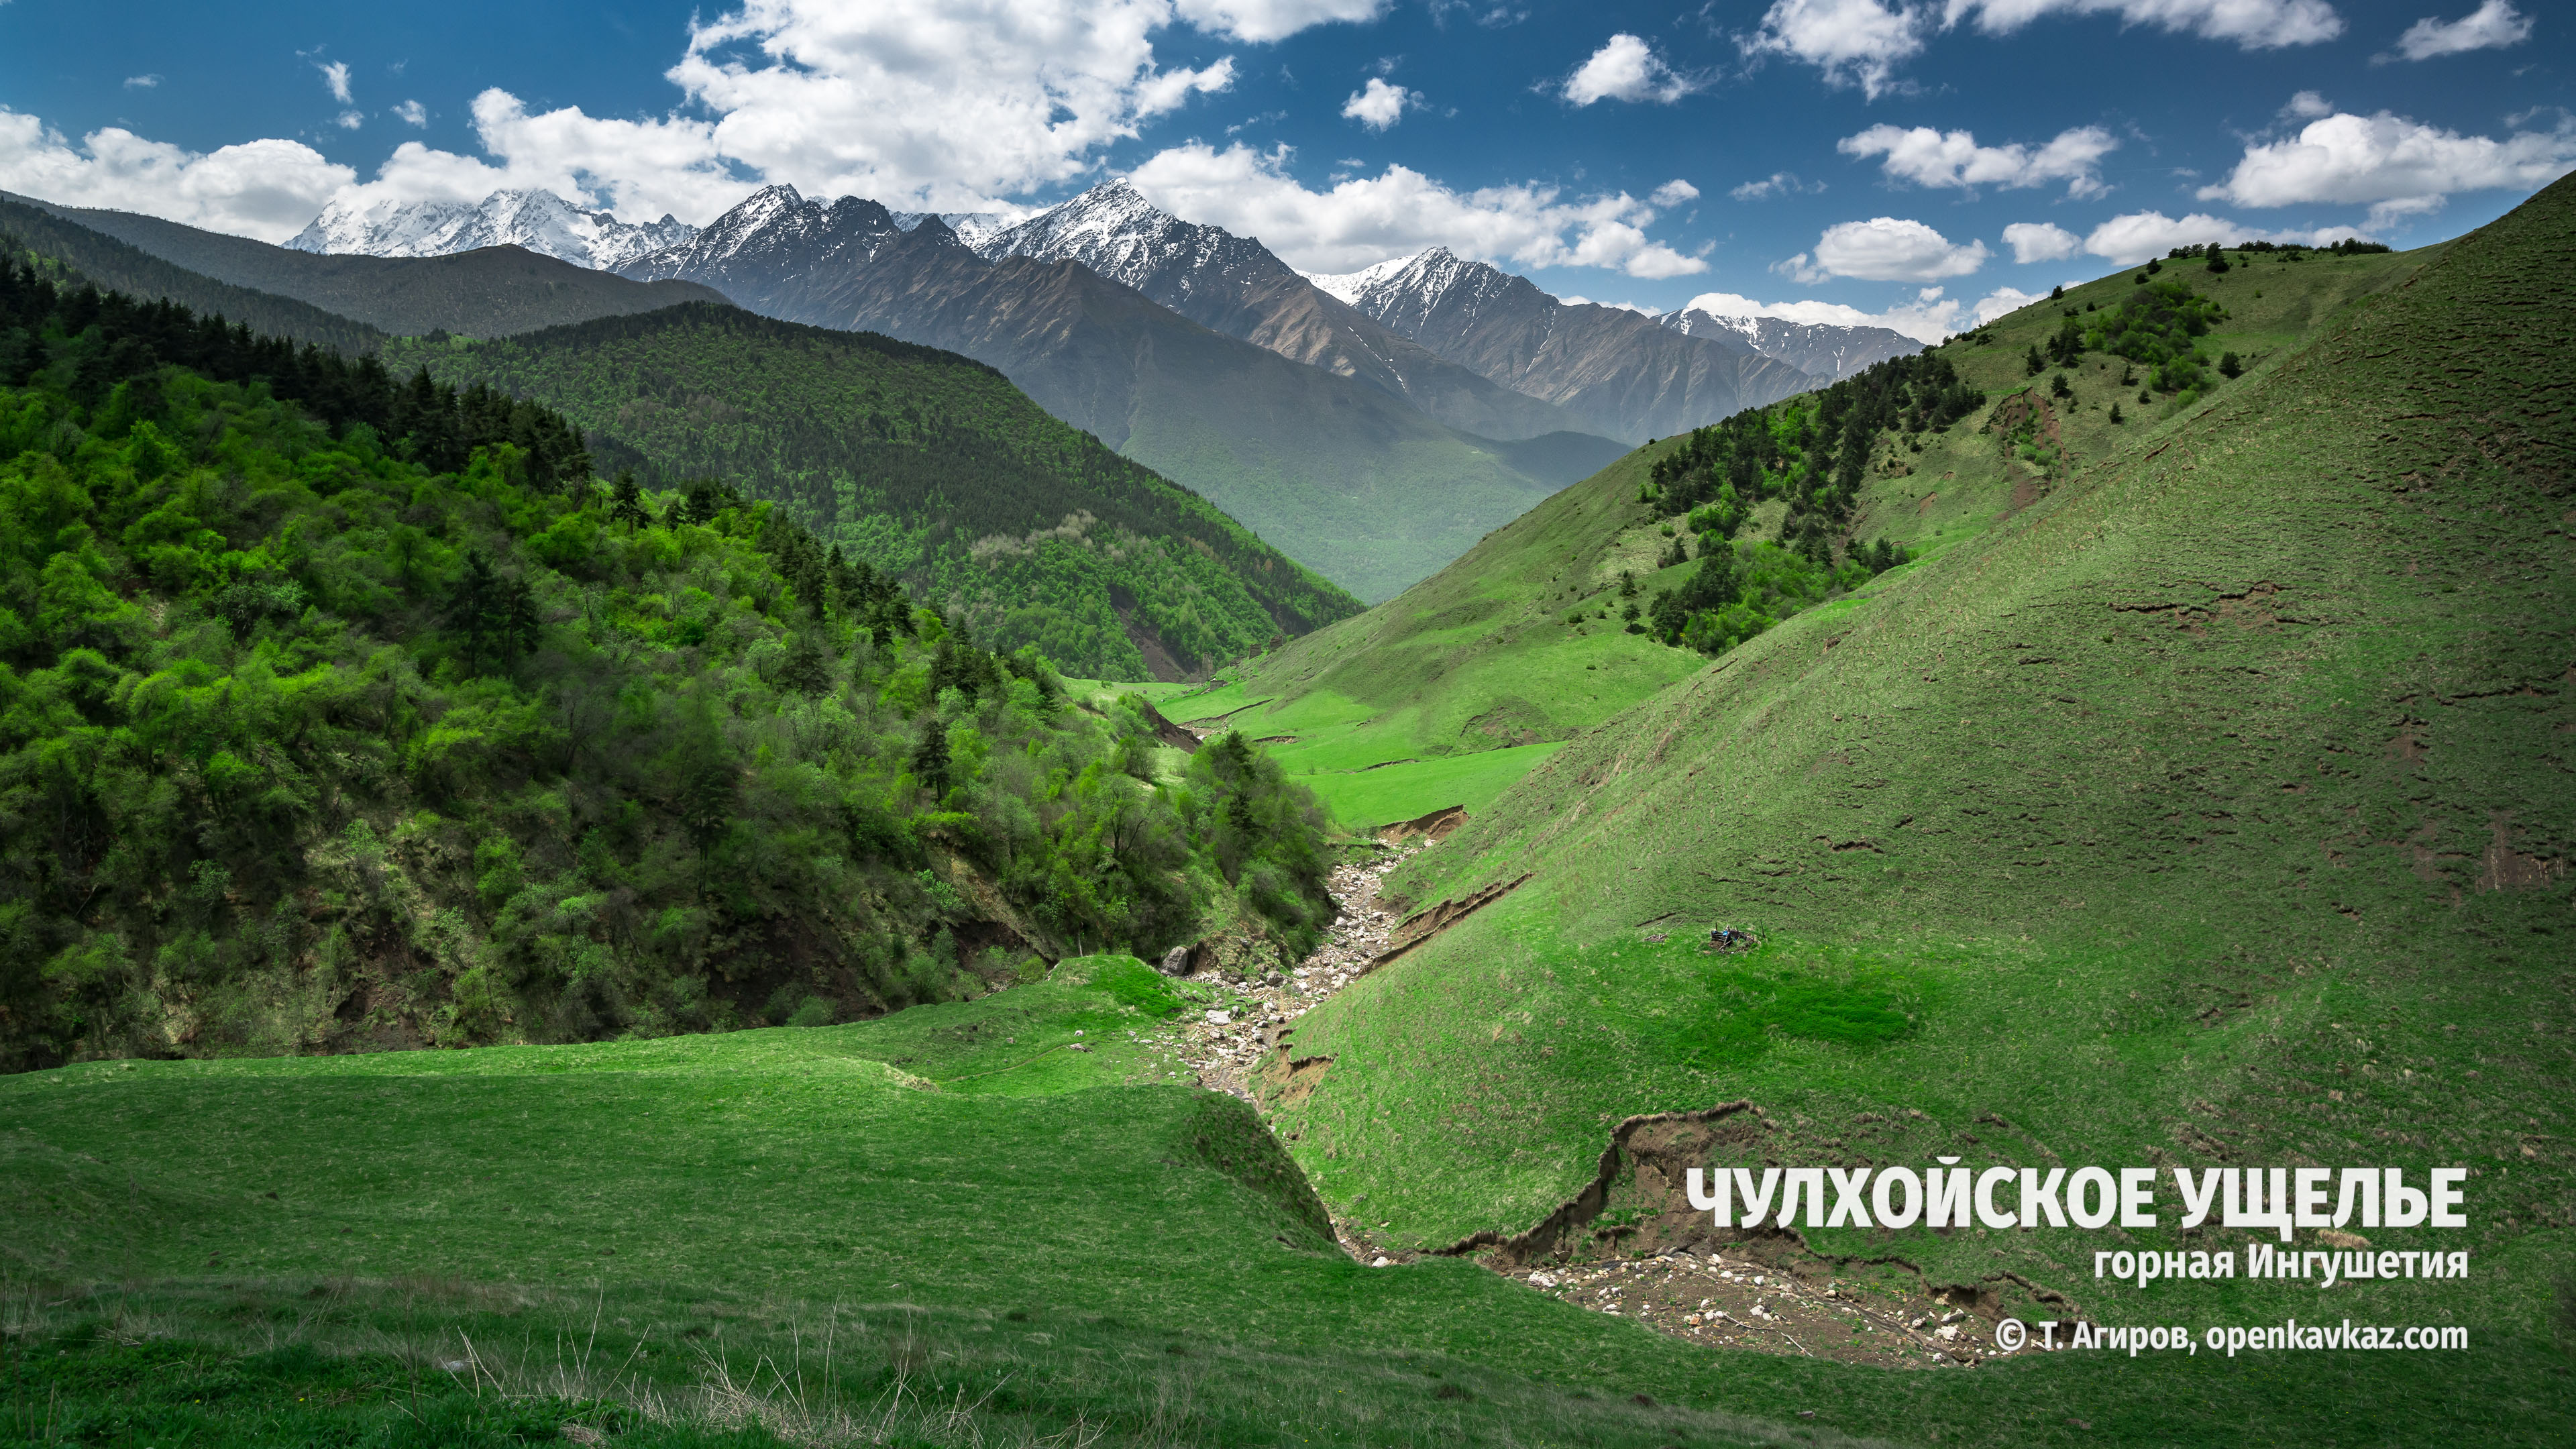 Чулхойское ущелье и его окрестности, Ингушетия